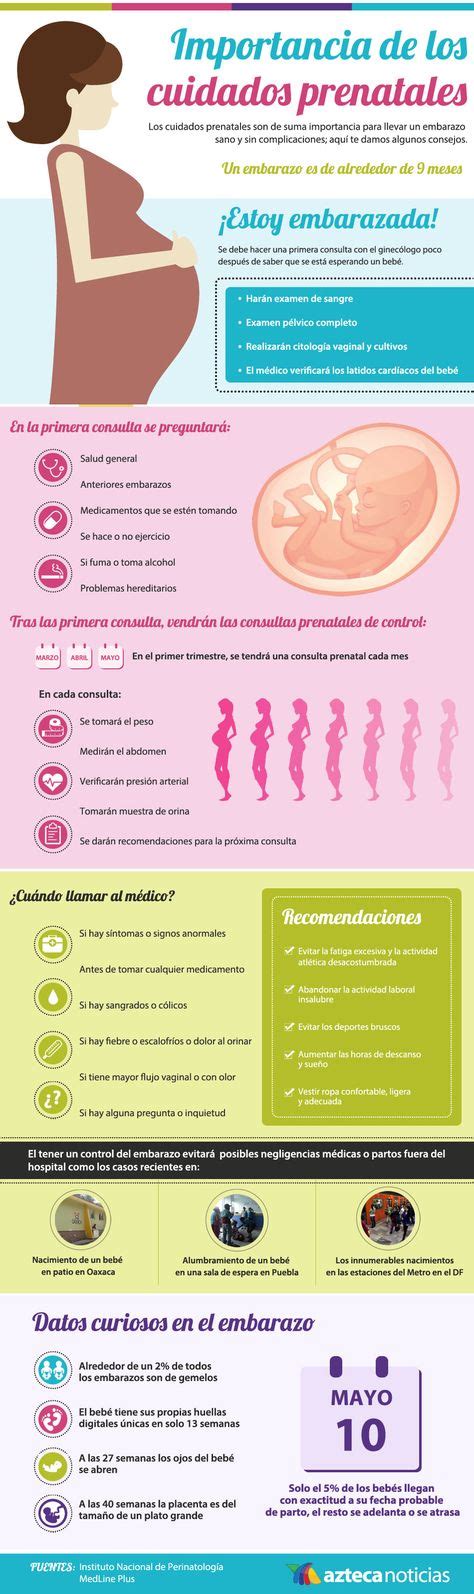 Ideas De Gestacion Embarazo Y Parto Cuidados En El Embarazo Embarazo